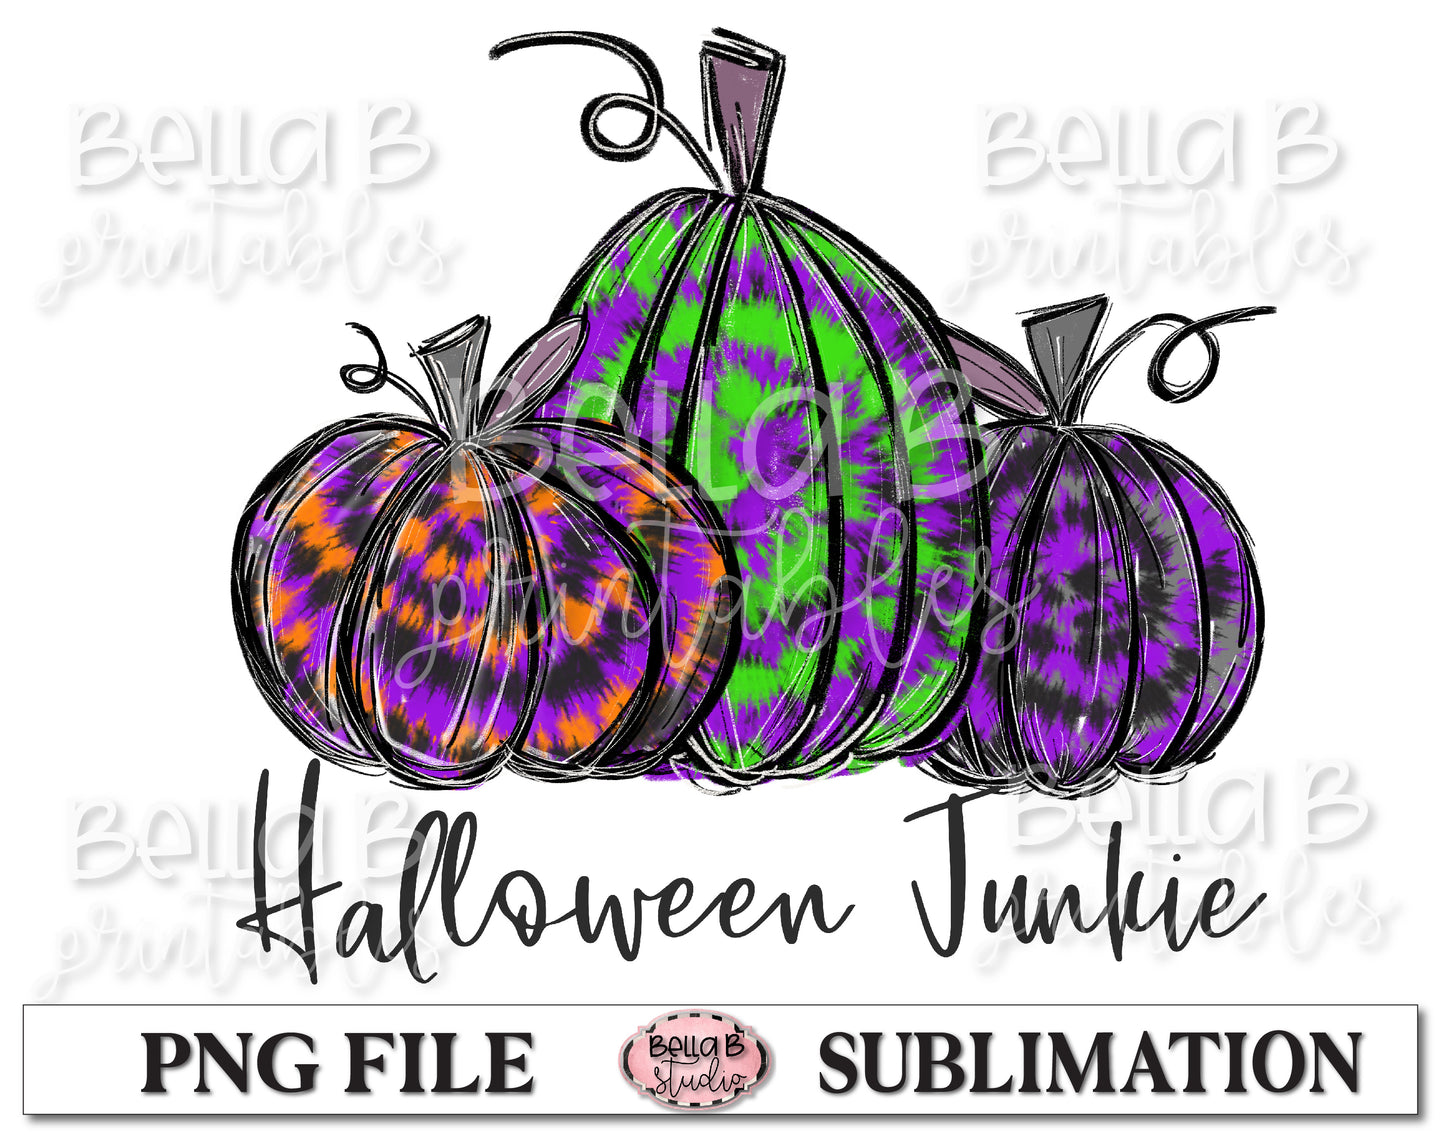 Halloween Junkie Sublimation Design, Halloween Pumpkins, Hand Drawn